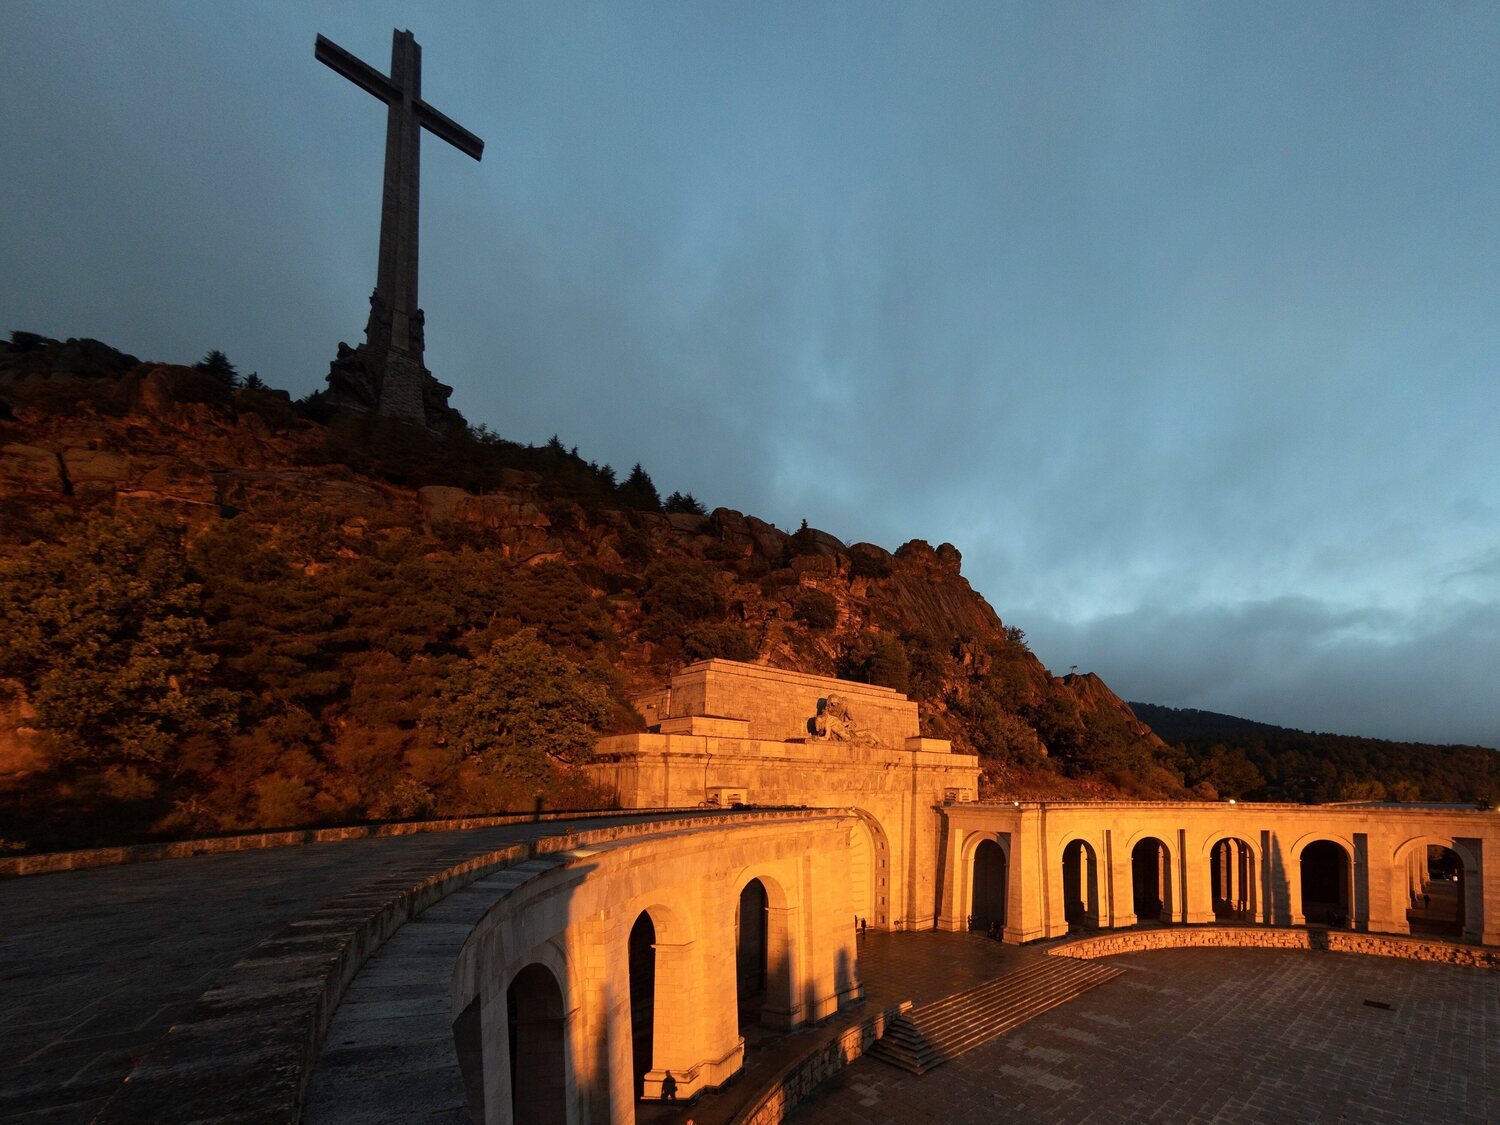 La Justicia permite la exhumación de víctimas del franquismo en el Valle de los Caídos